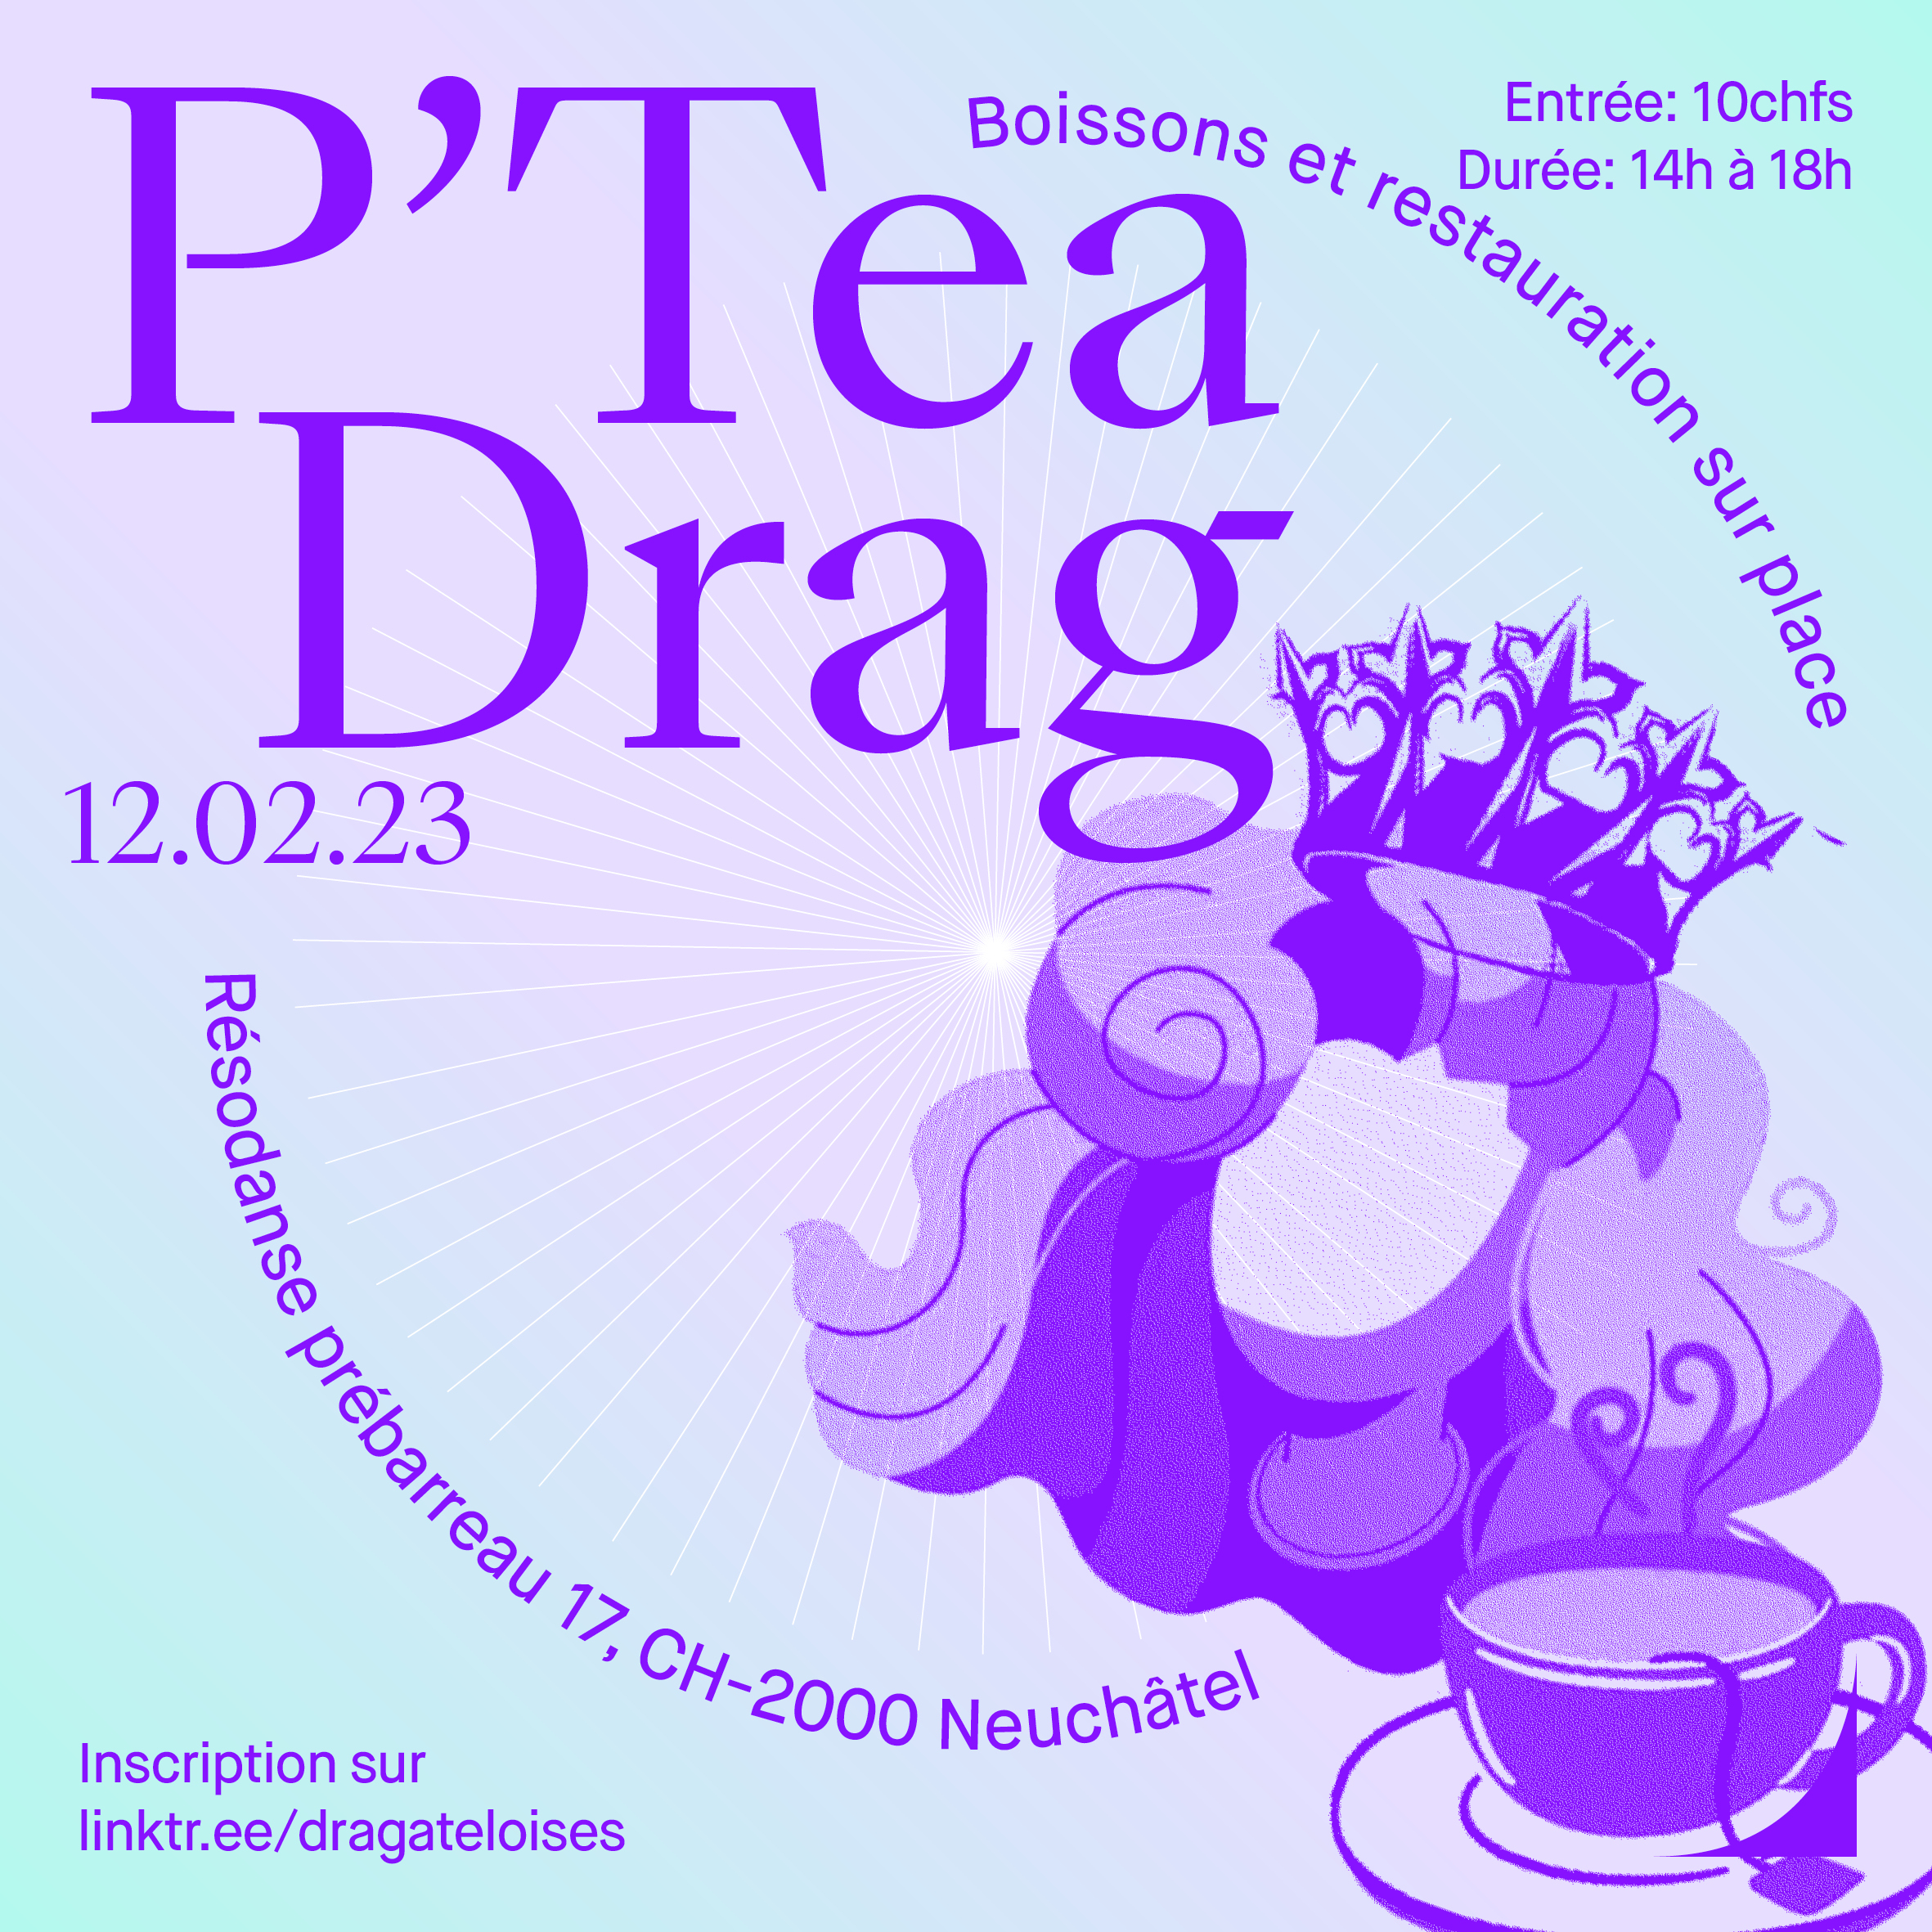 Affiche P'Tea Drag du 12 février 2023 Visuel: Manon Vouga